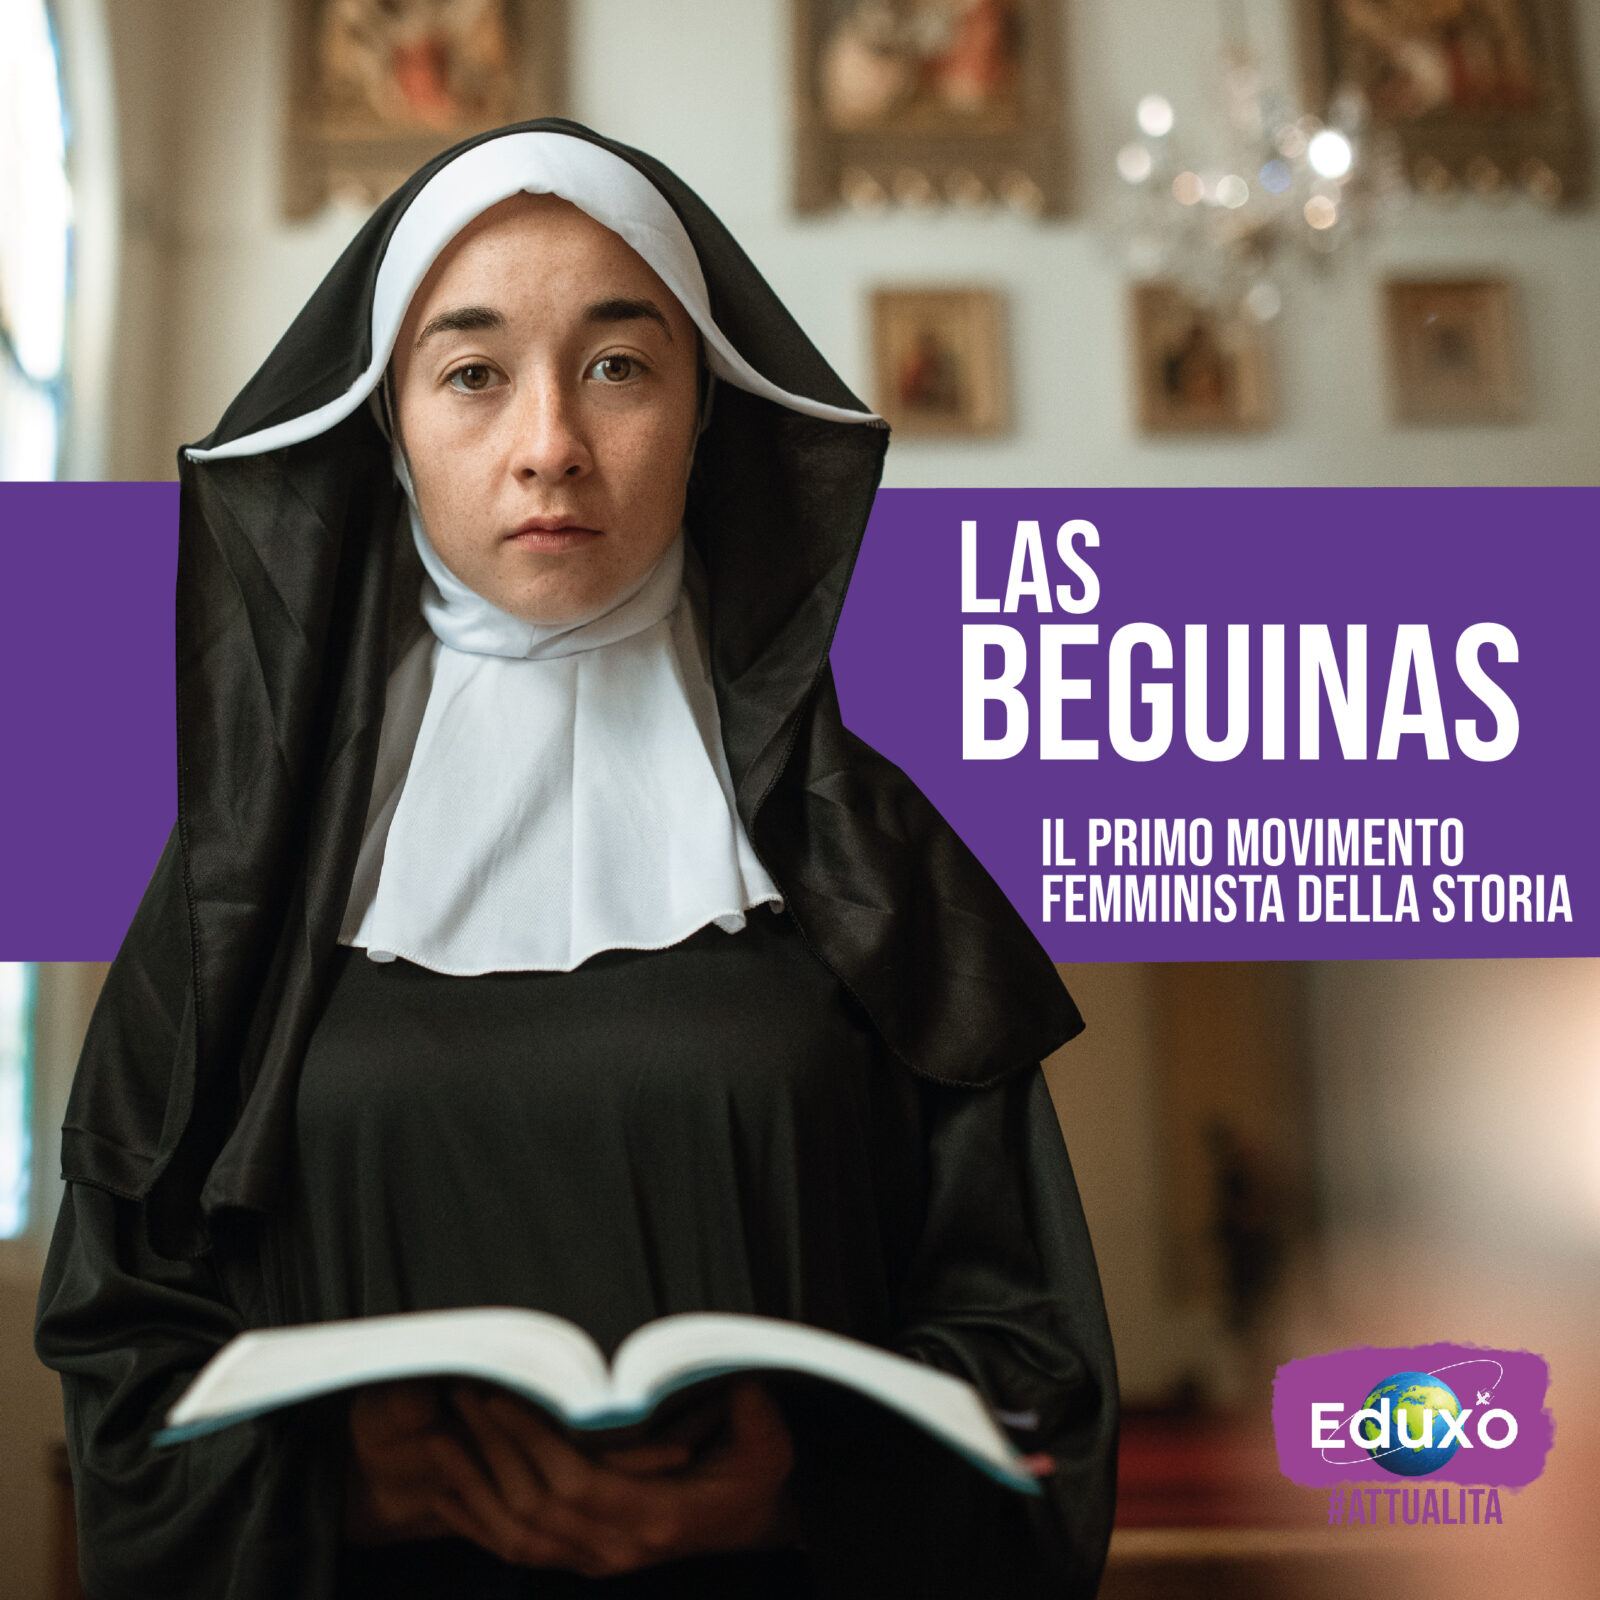 Al momento stai visualizzando Las beguinas: il primo movimento femminista della storia